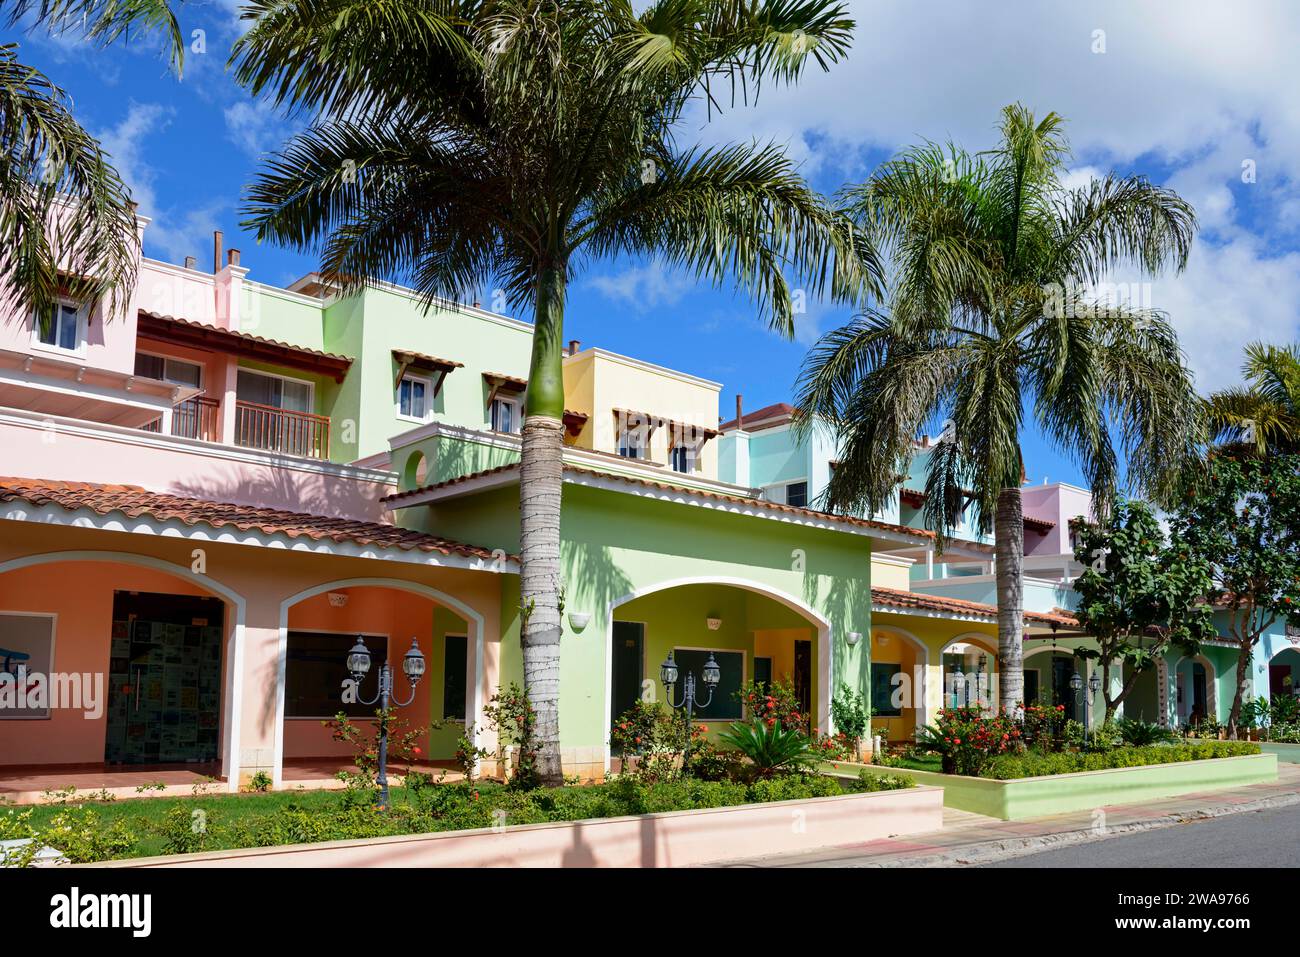 Des maisons colorées sous un ciel bleu avec des palmiers créent une atmosphère tropicale et détendue, Bayahibe, République Dominicaine, Hispaniola, Caraïbes, Ameri Banque D'Images